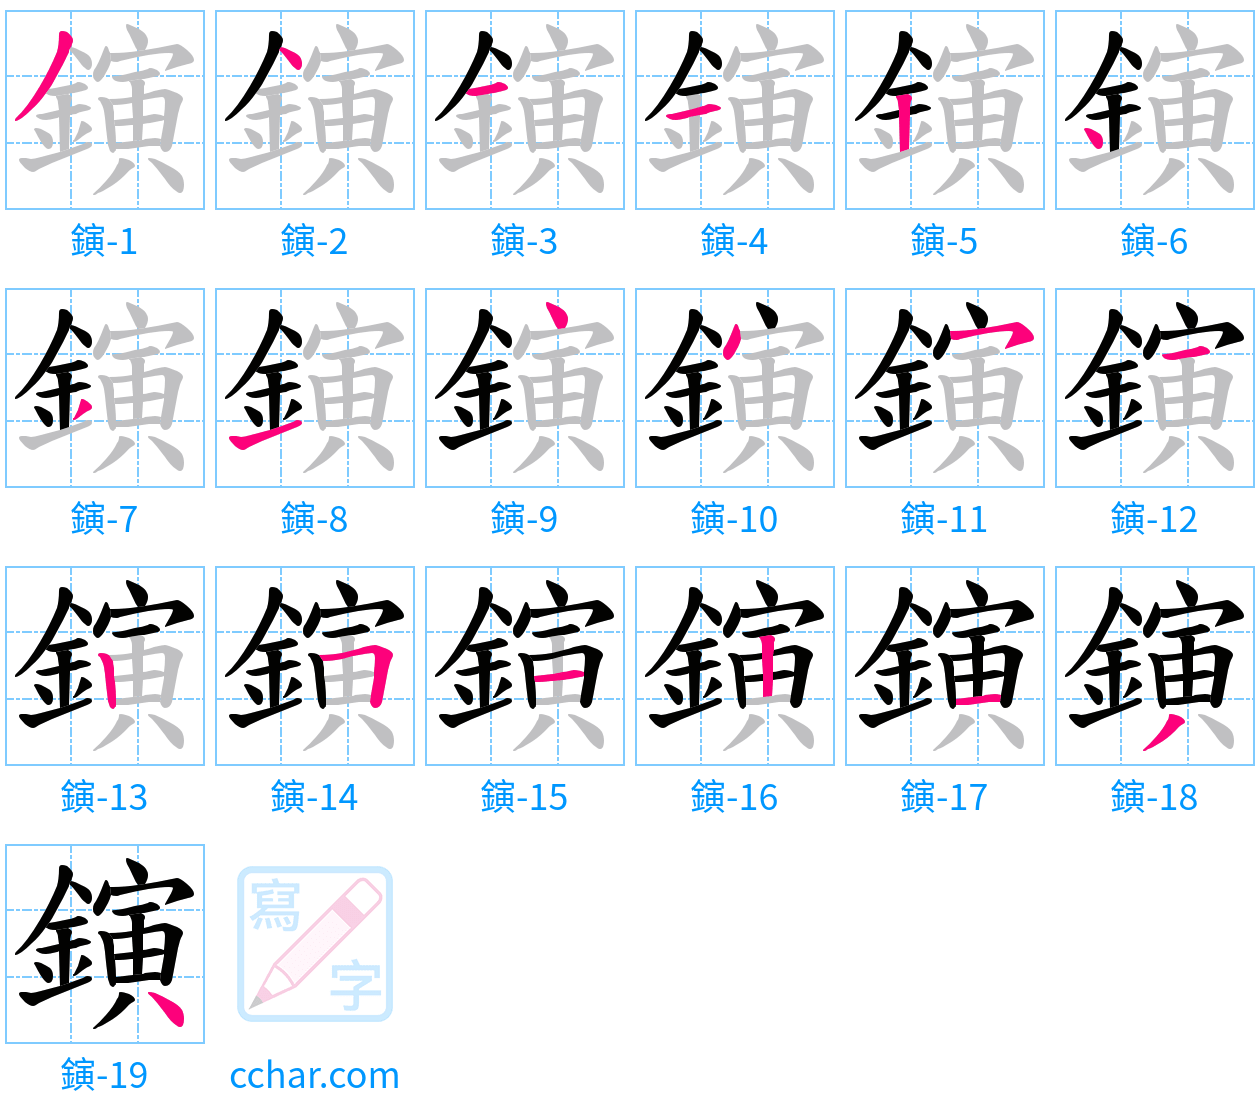 鏔 stroke order step-by-step diagram